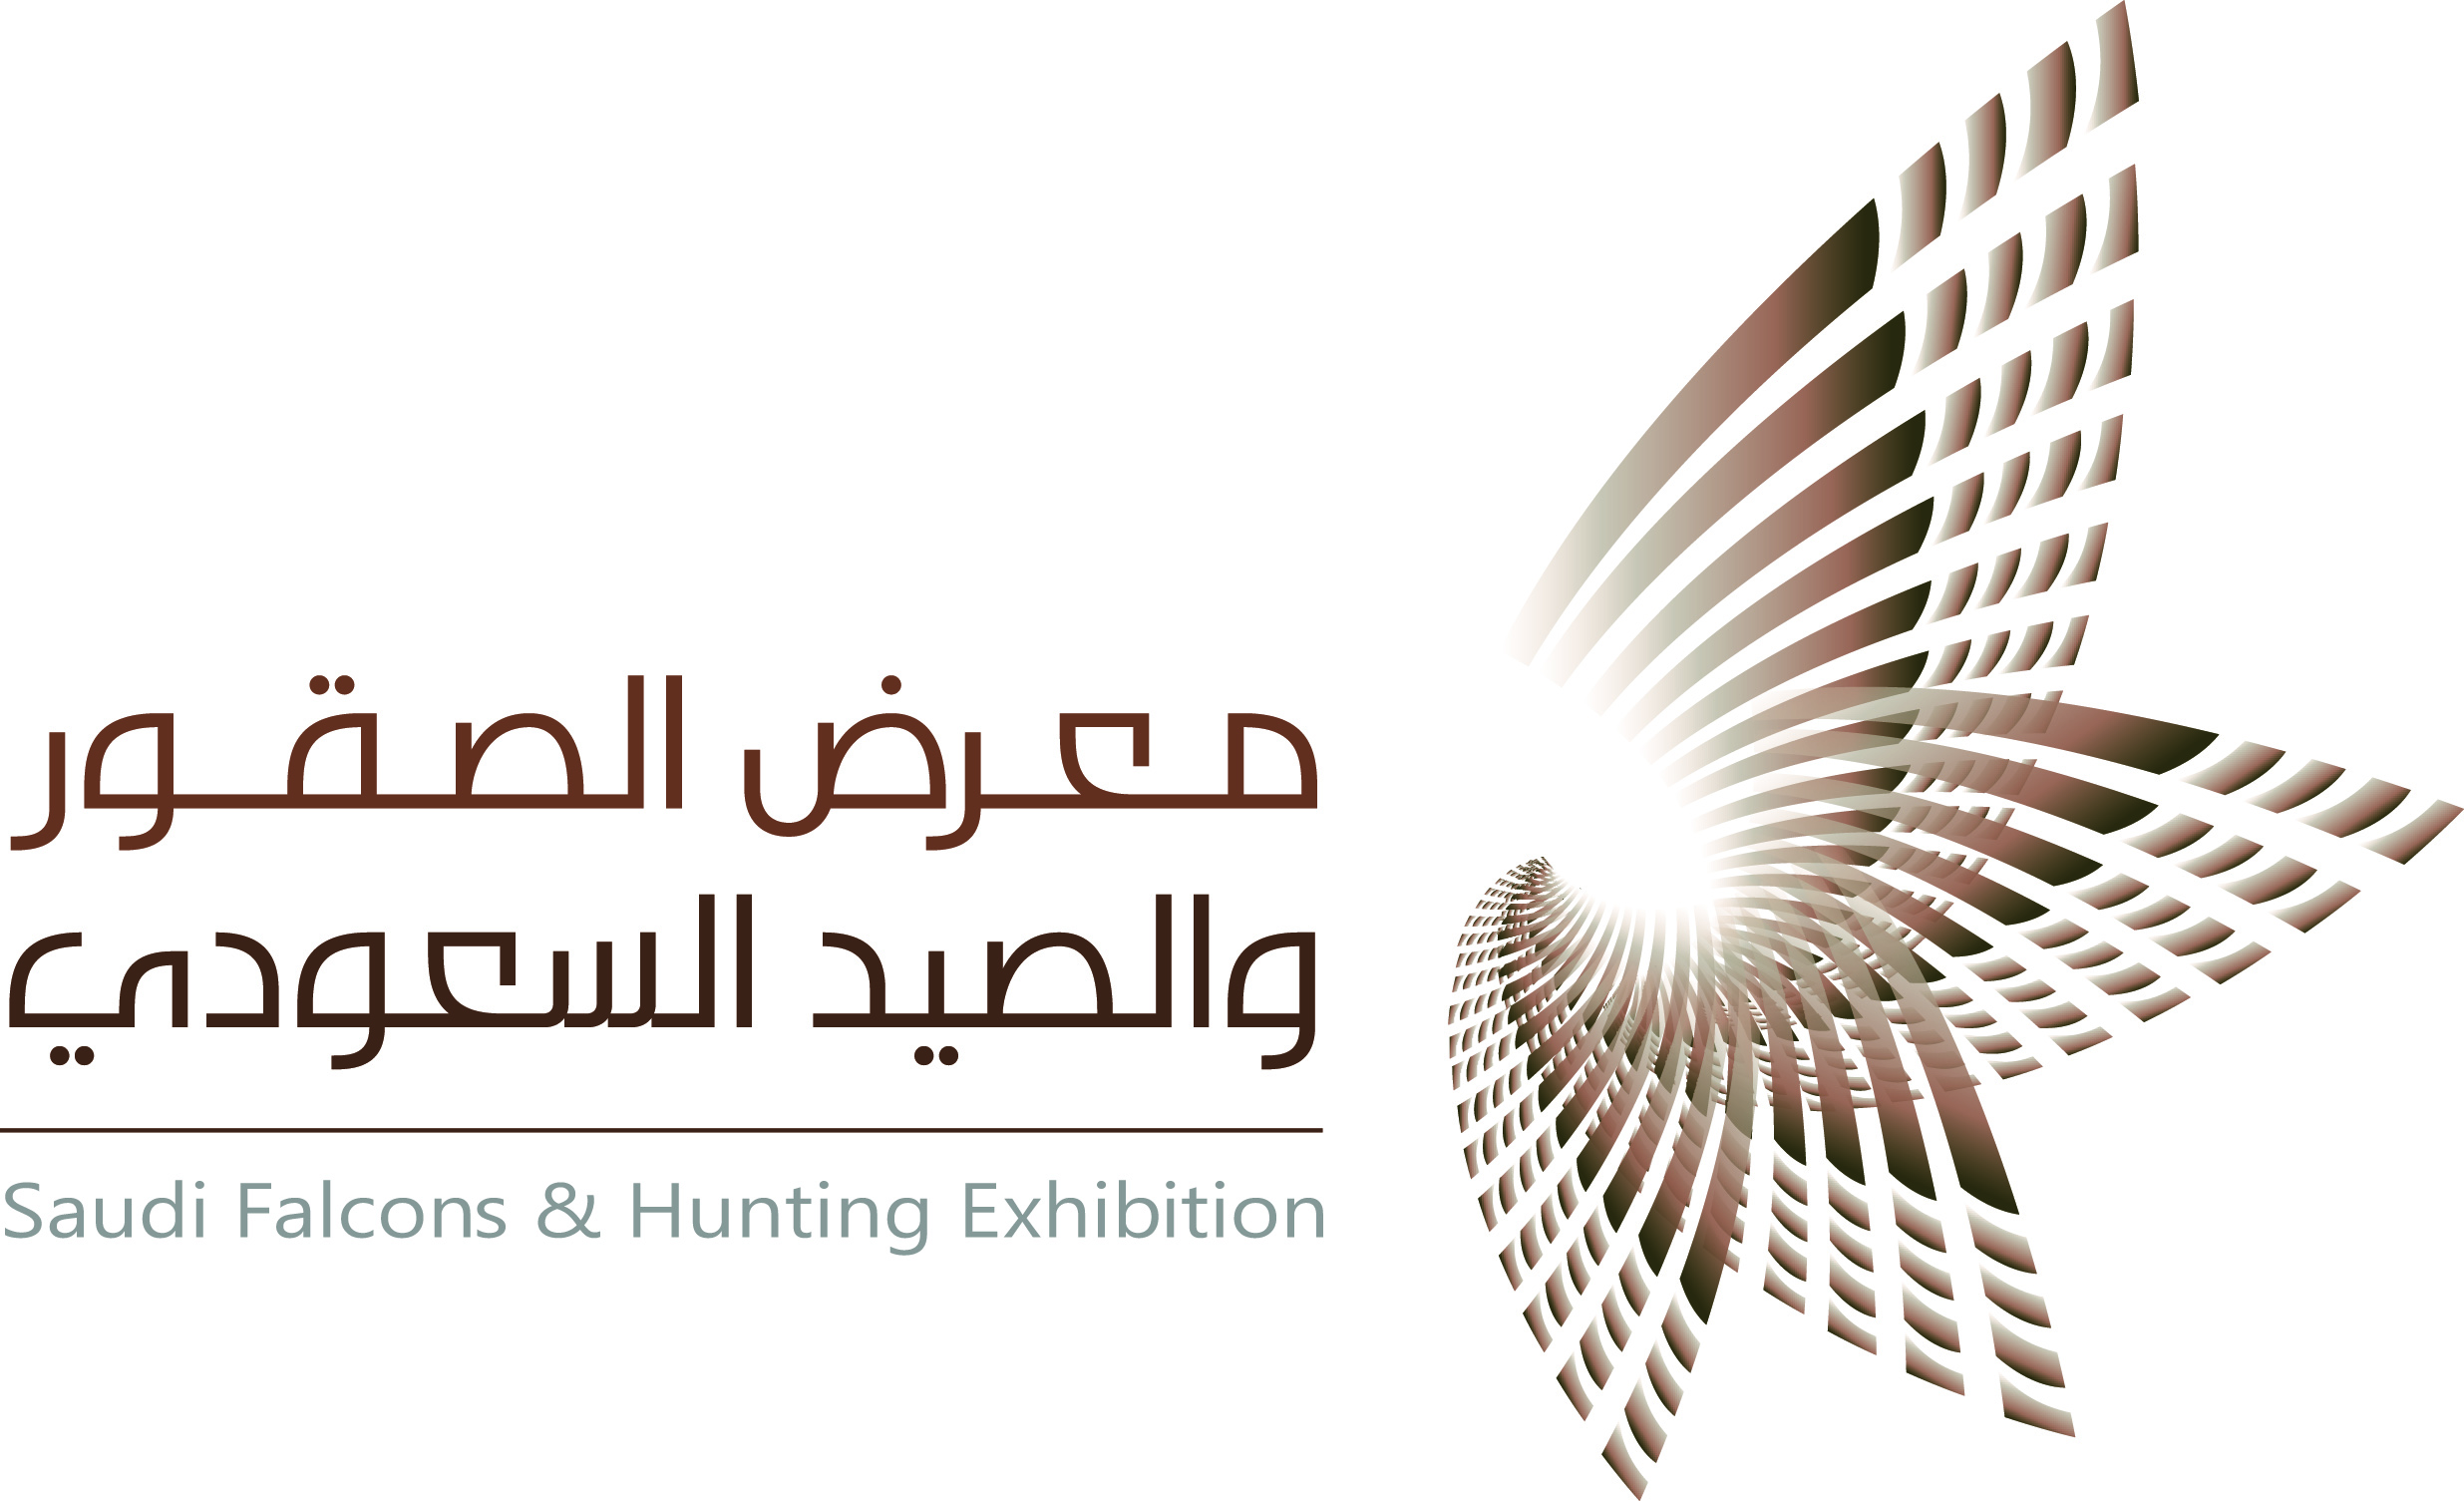 انطلاق معرض الصقور والصيد السعودي بمشاركة أكثر من 20 دولة